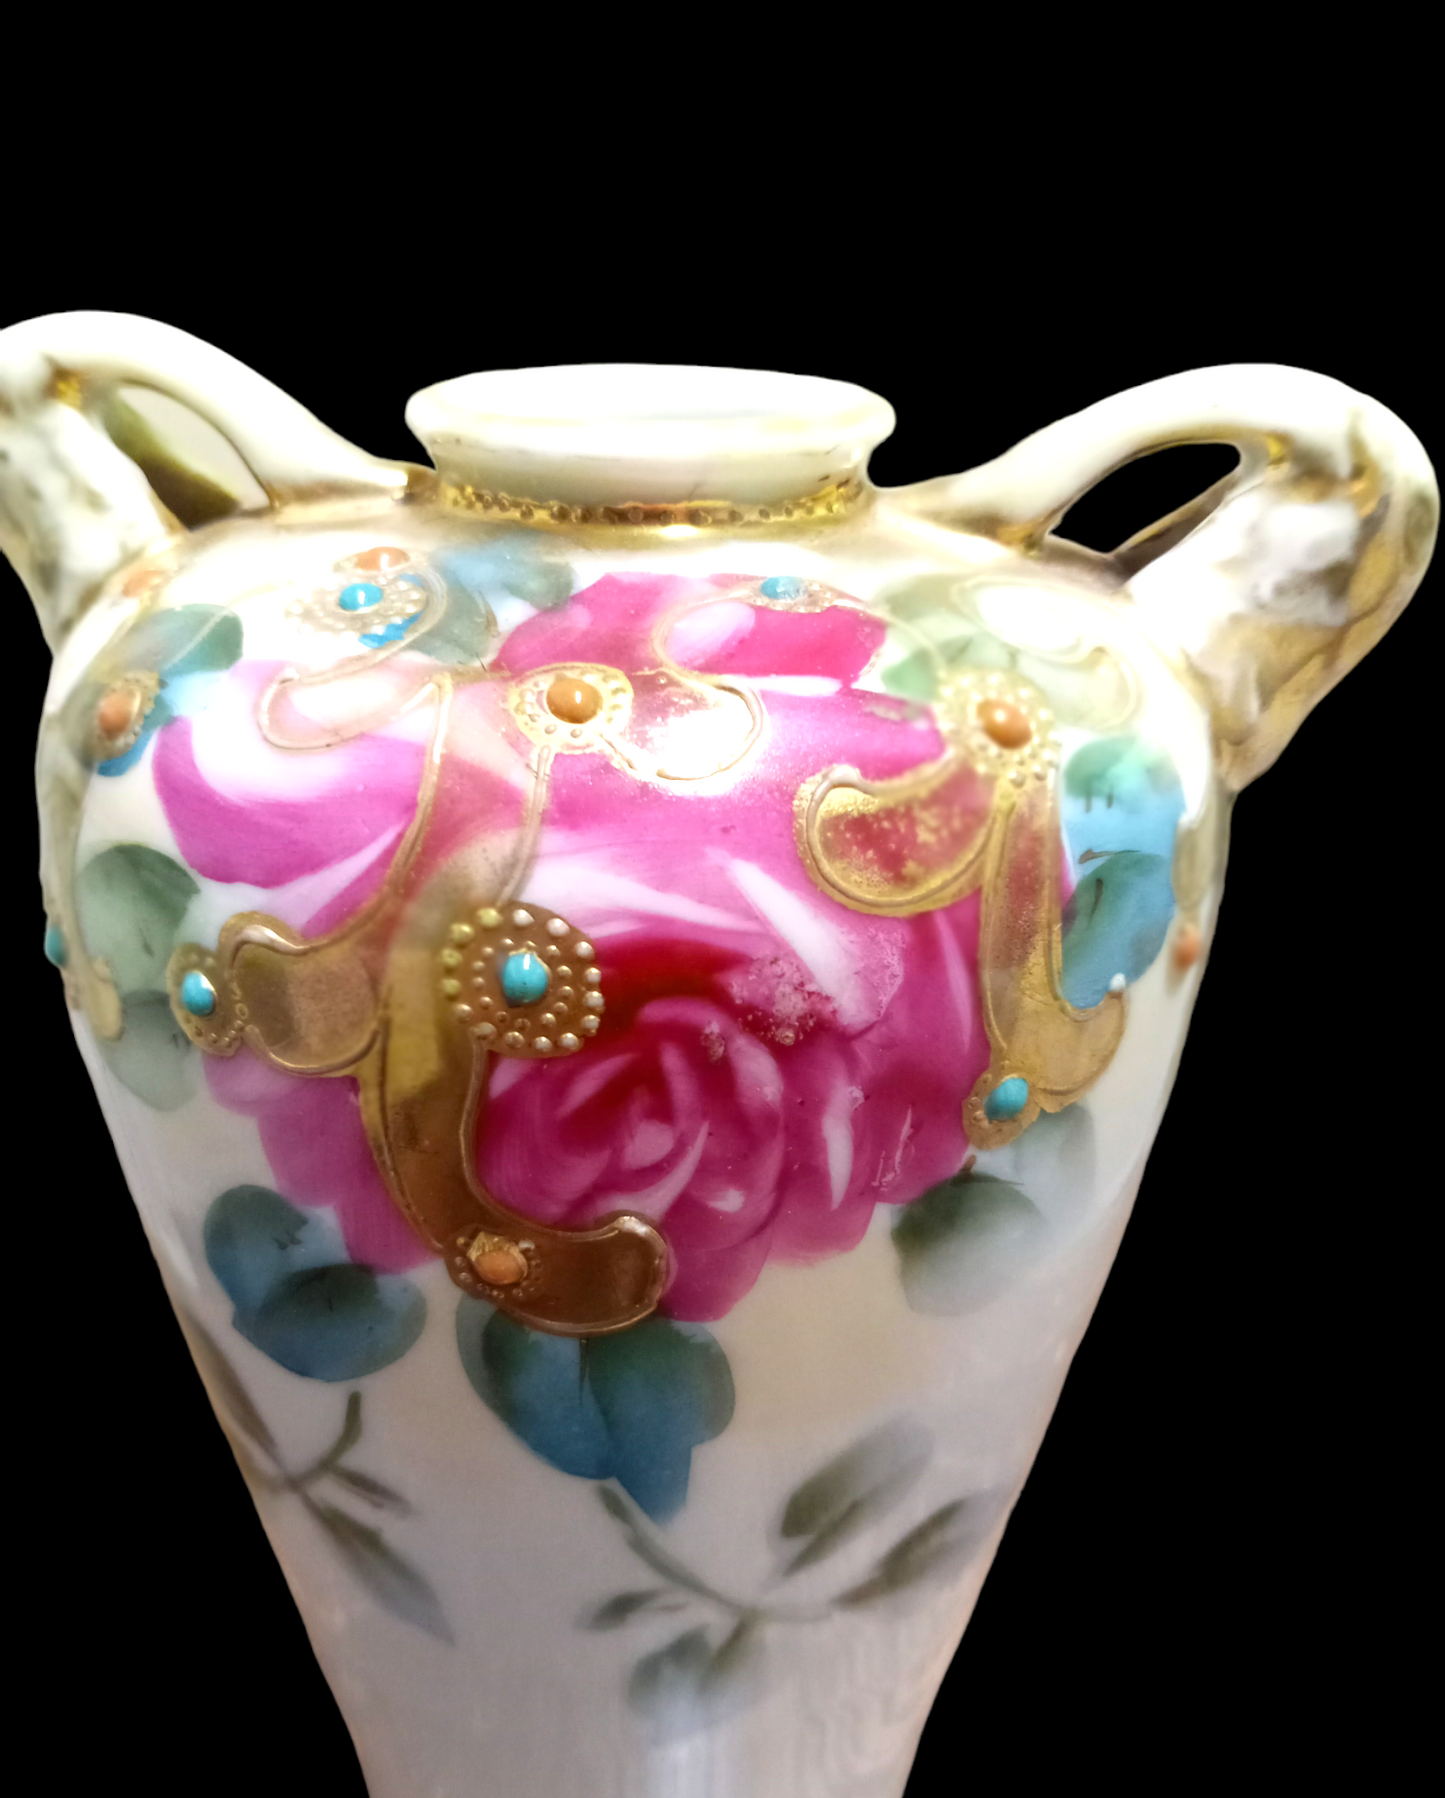 Antique Morimura Bros c.1911 Handpainted Vase